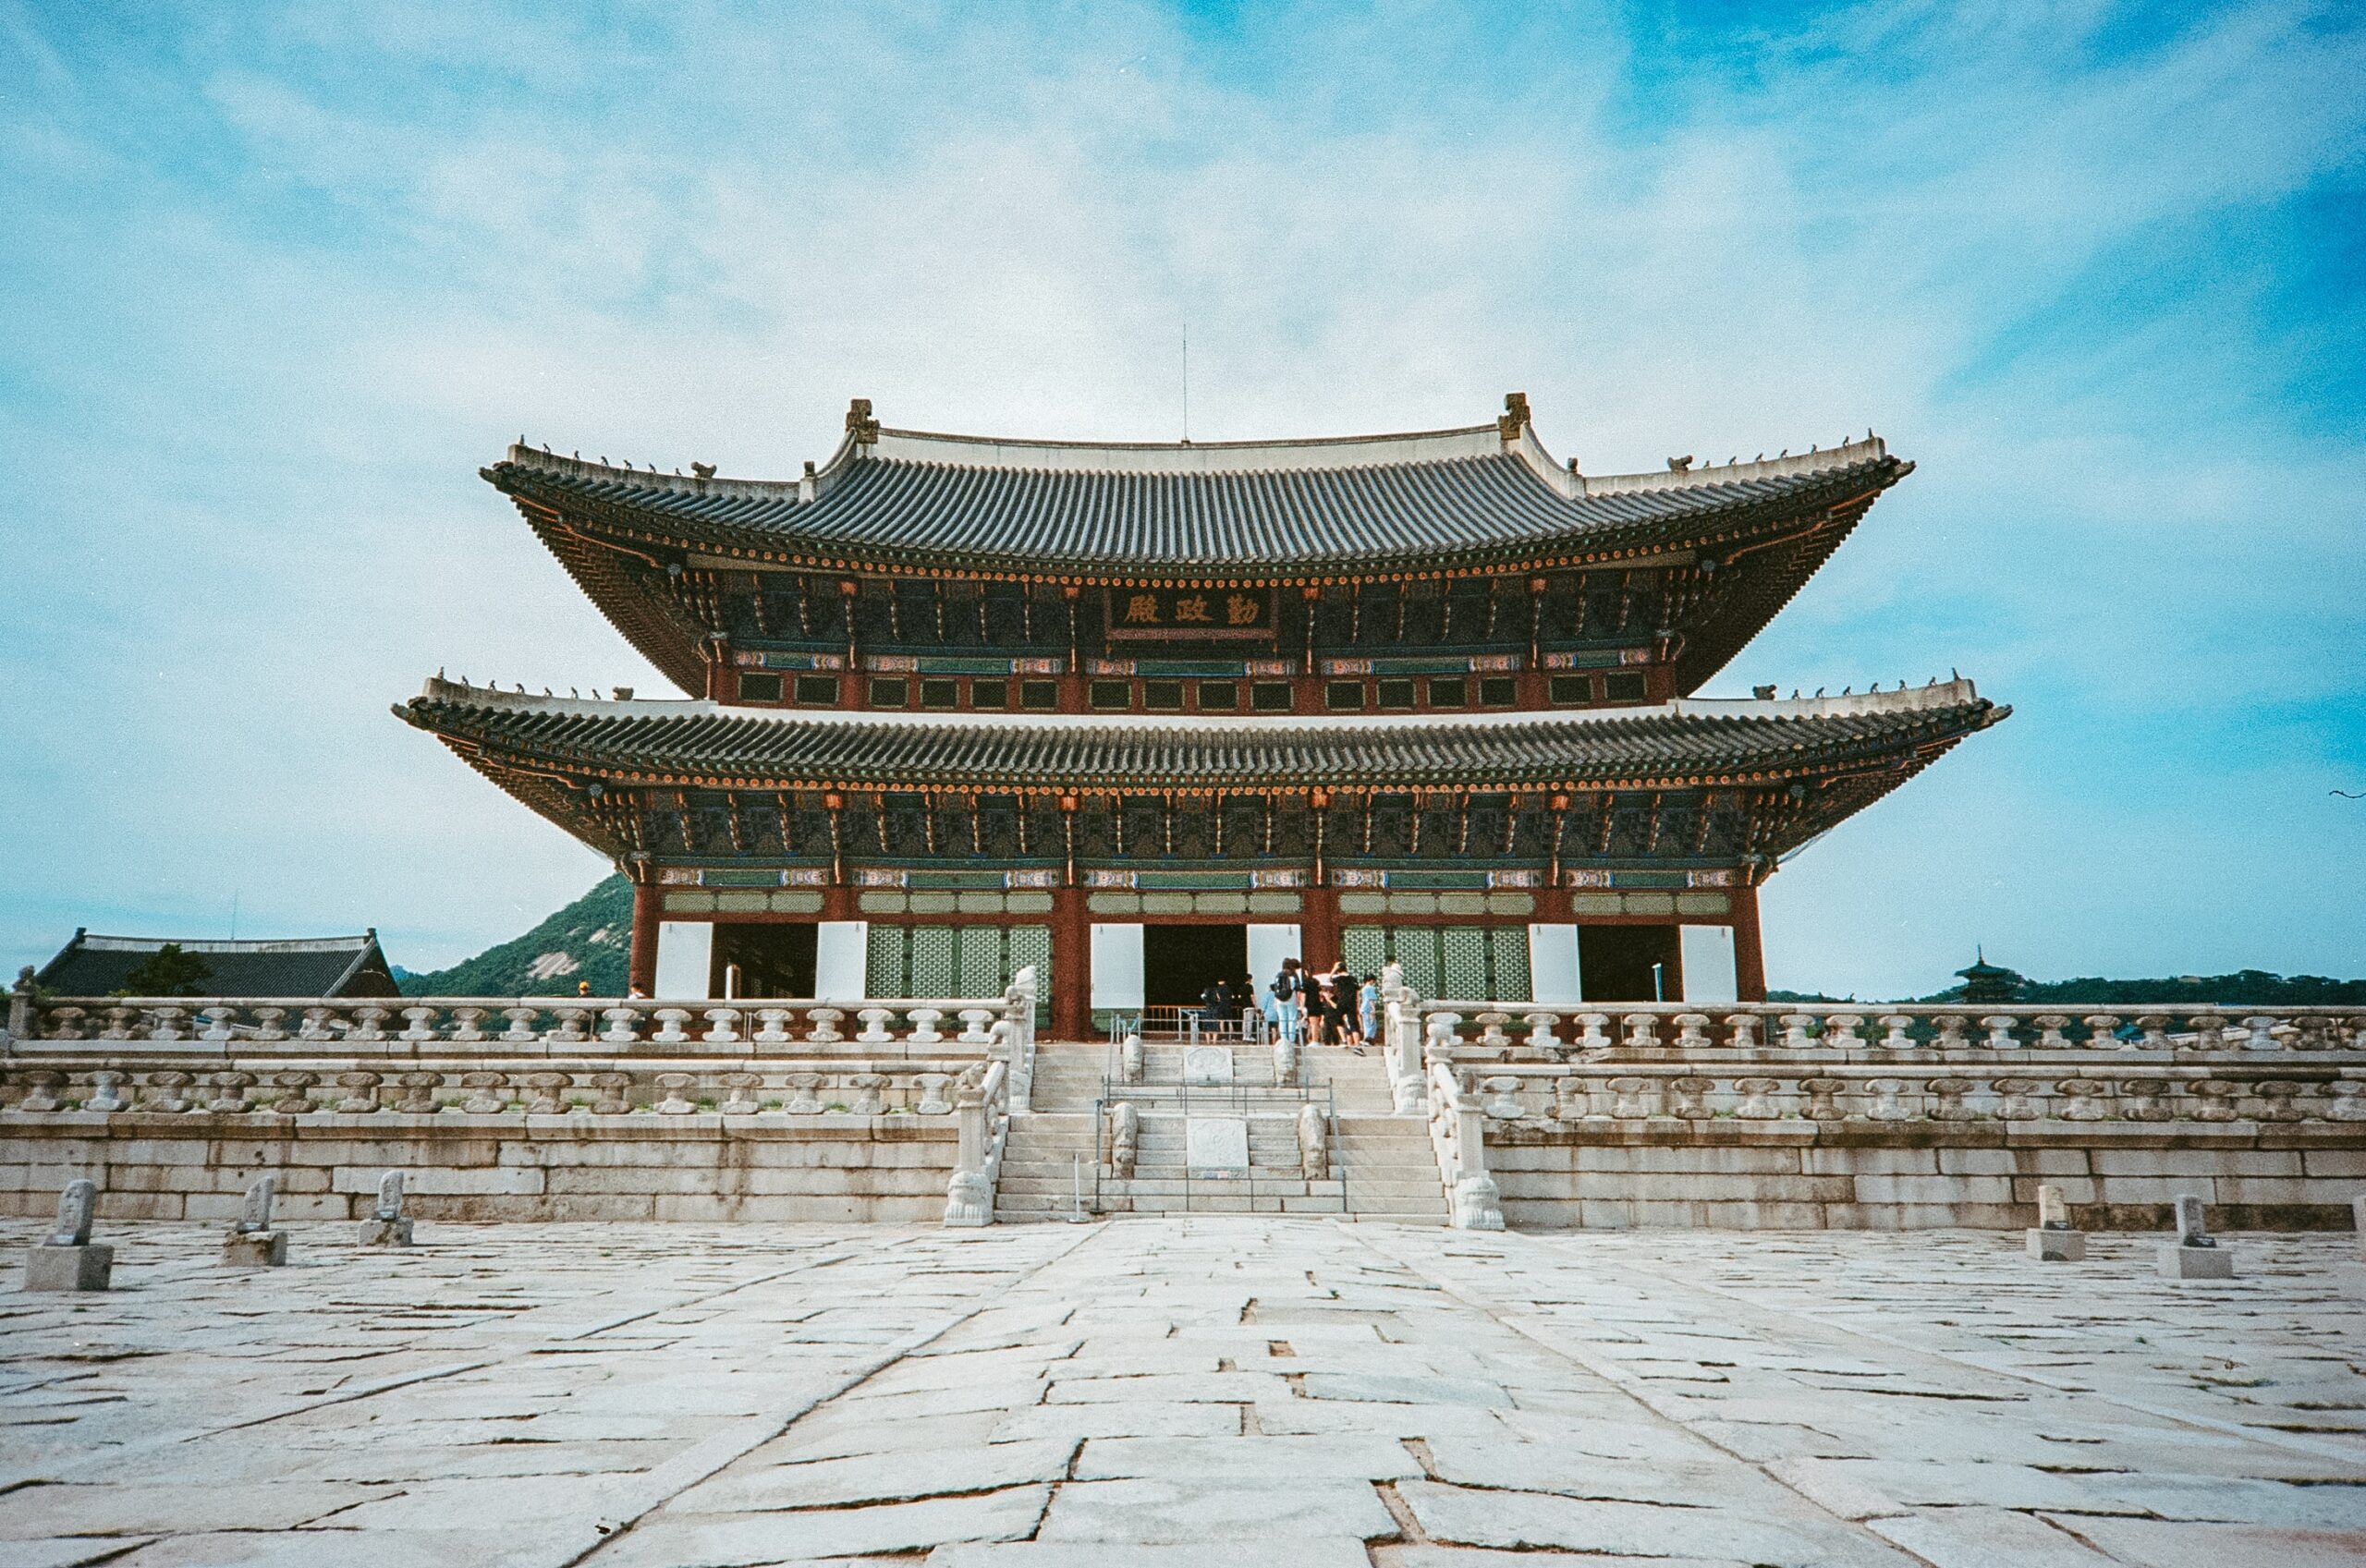 Cours de coréen - image du palais Gyeongeokgung à Séoul.